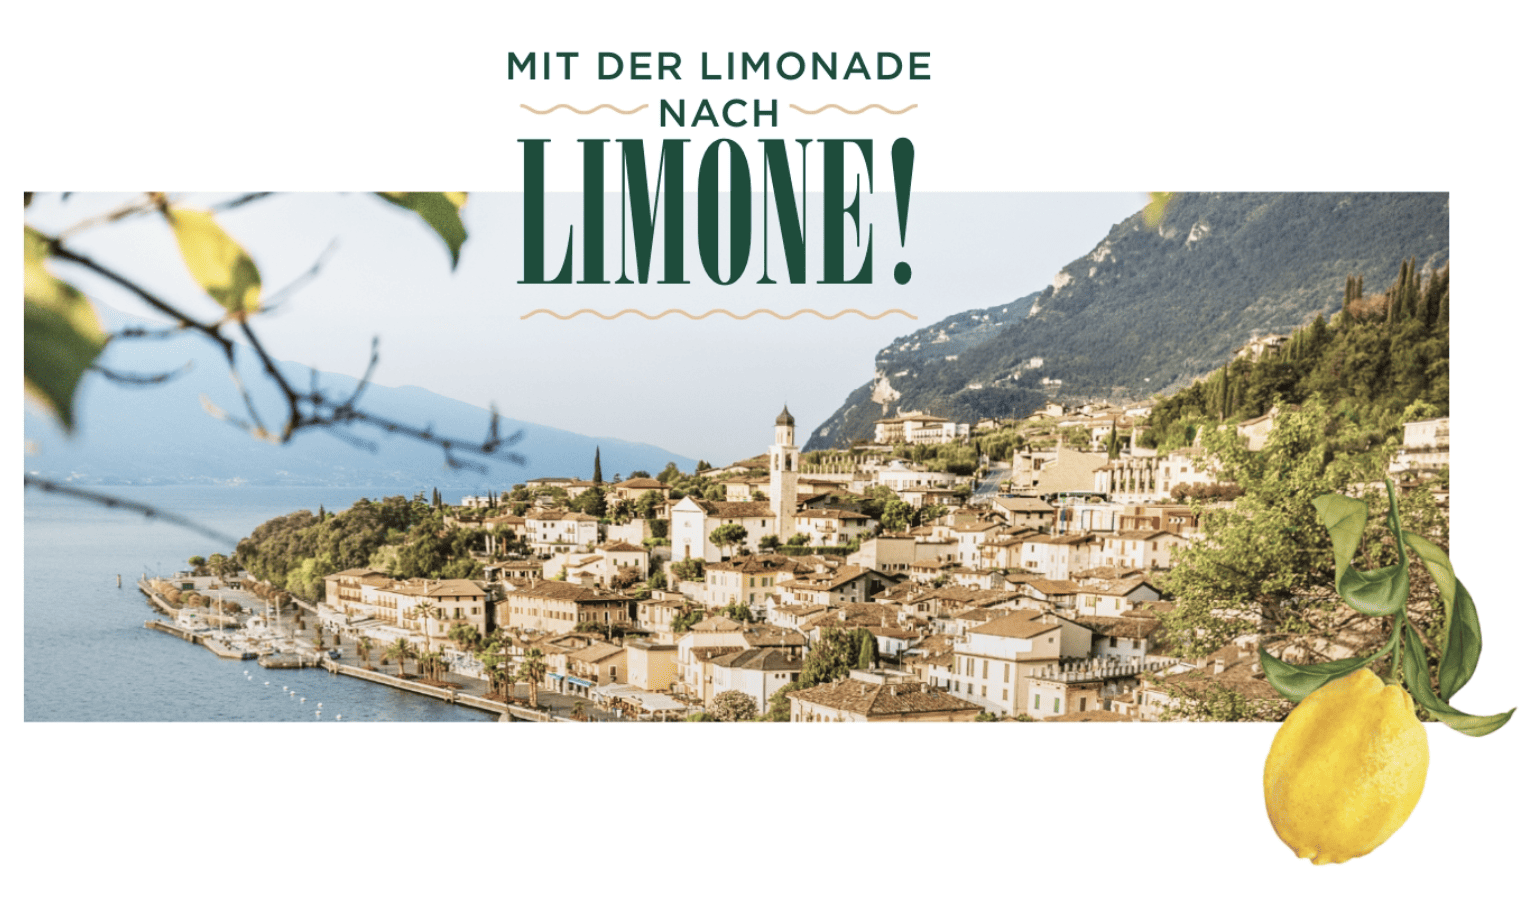 case_Vöslauer Bio-Limonade Gewinnspiel nach Limone